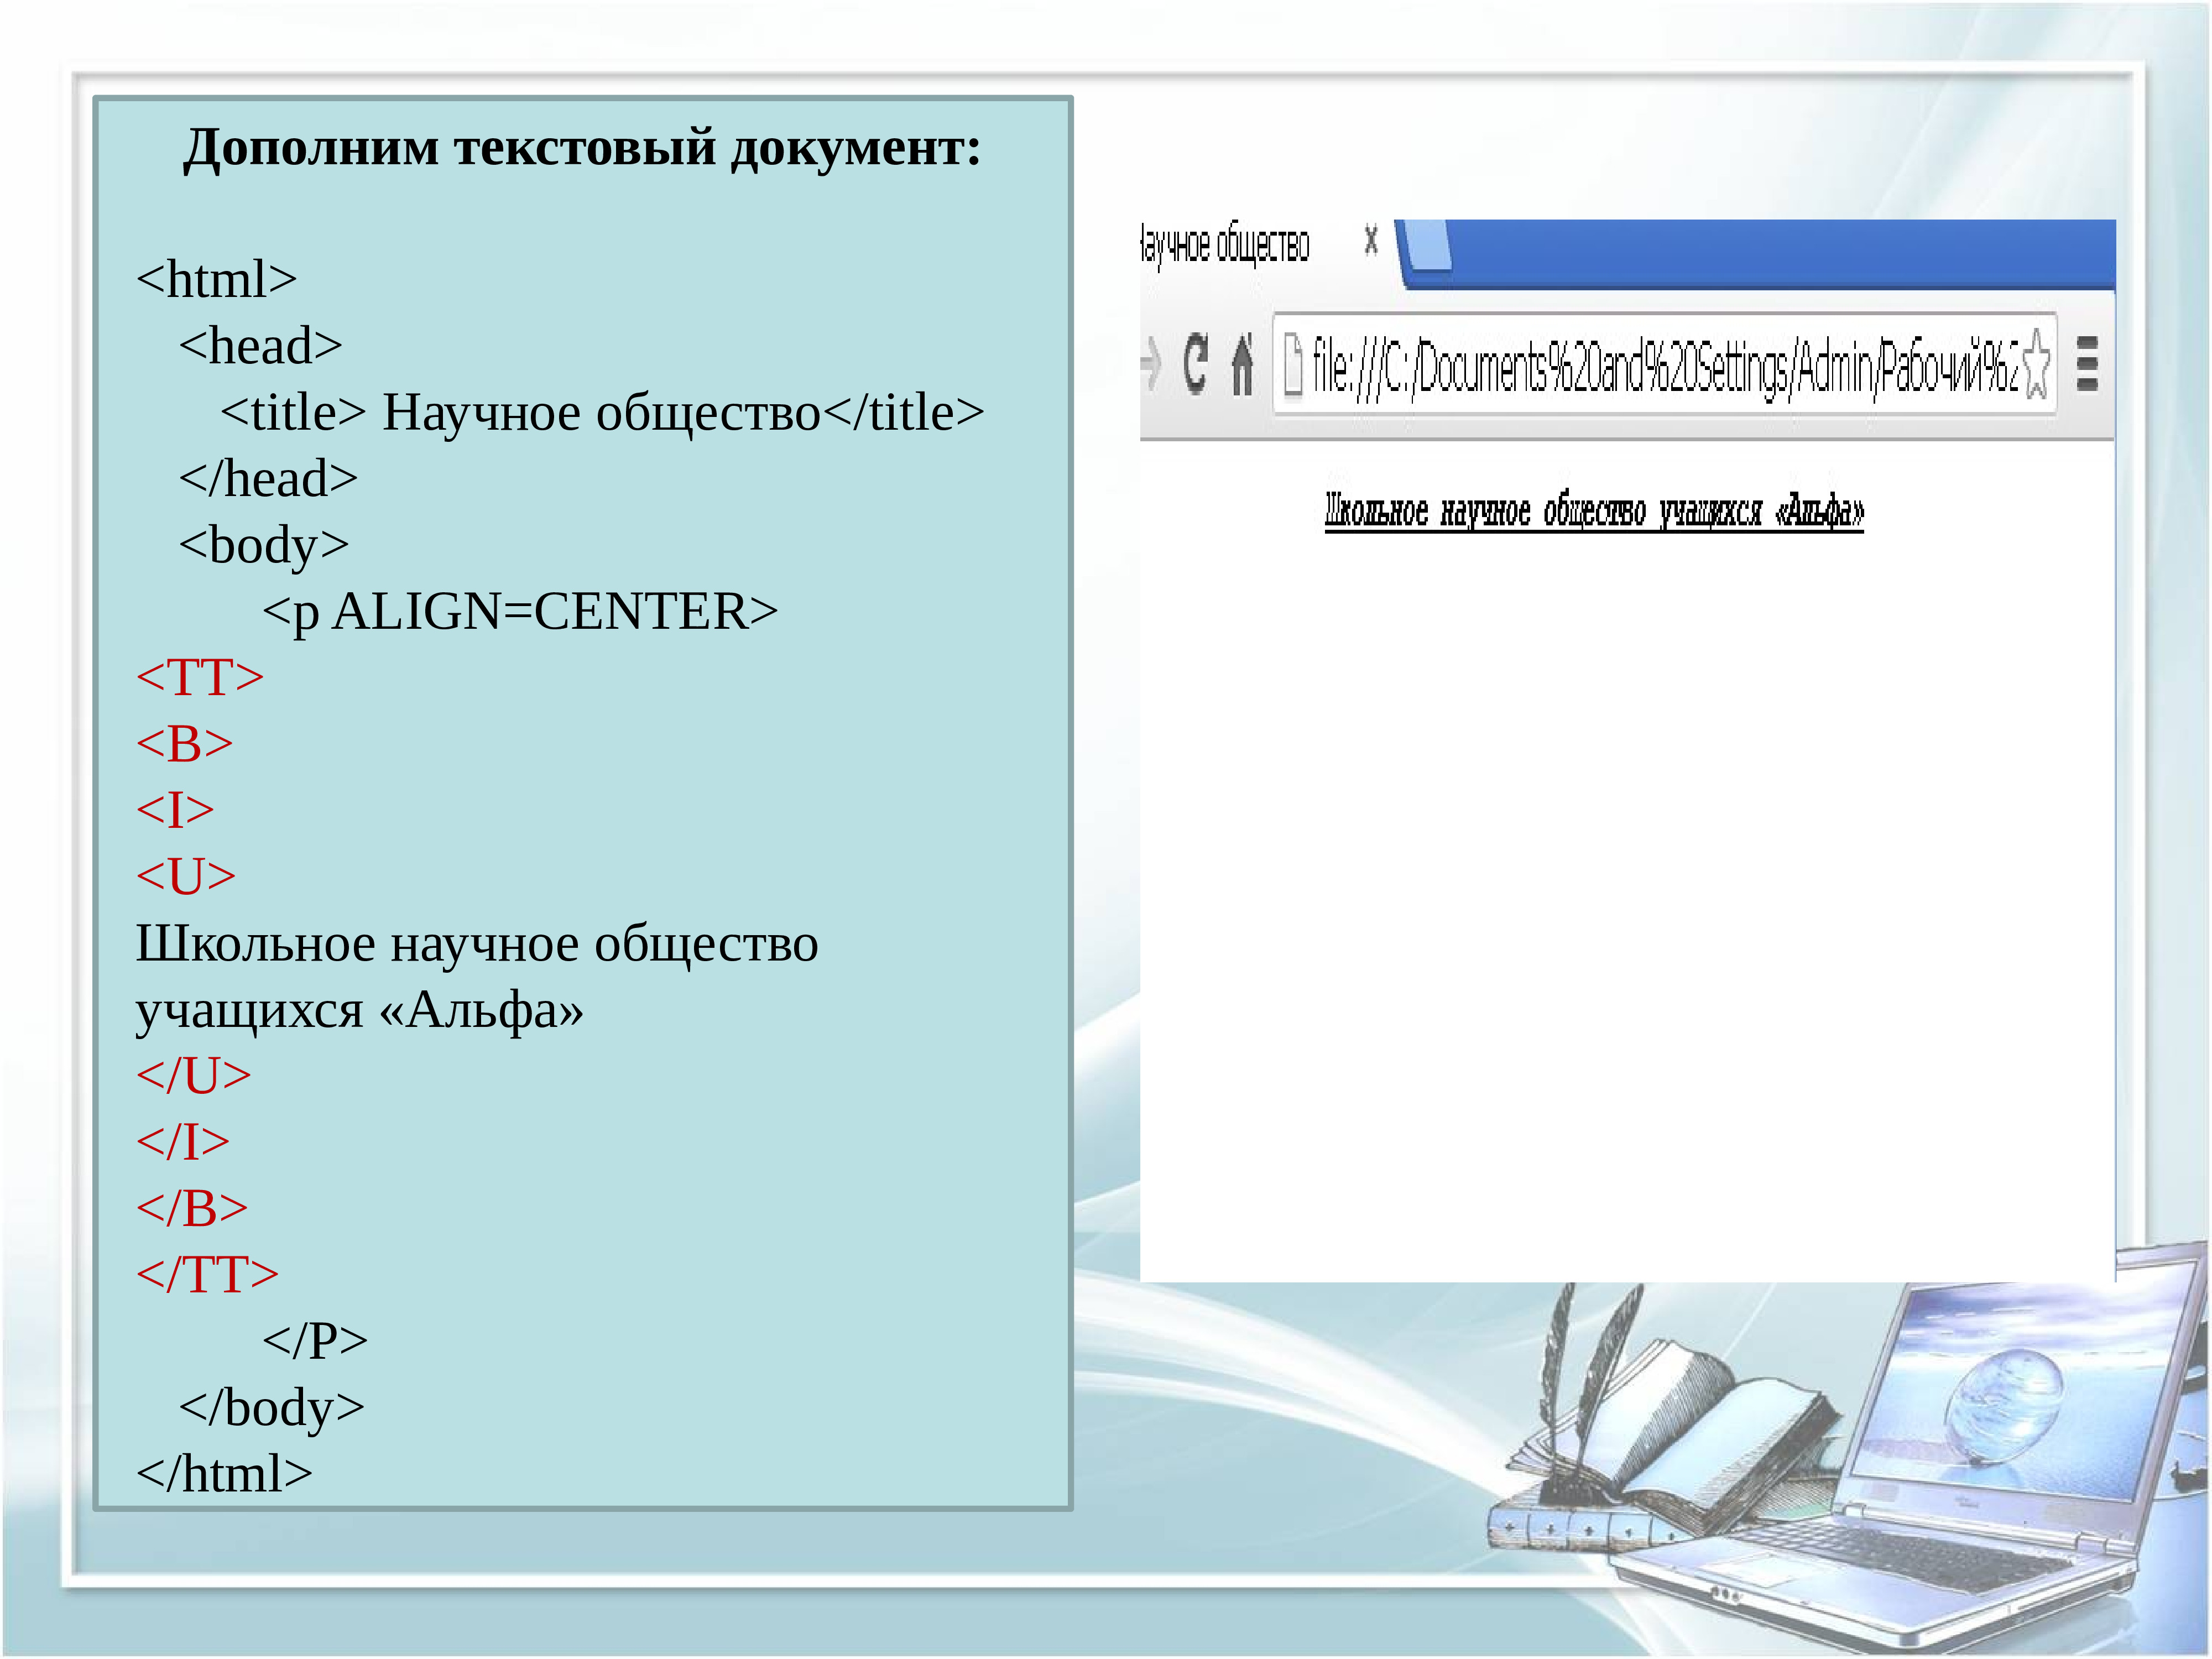 Русский язык в html. Html презентация. Презентация по html. Язык html. Основы html презентация.